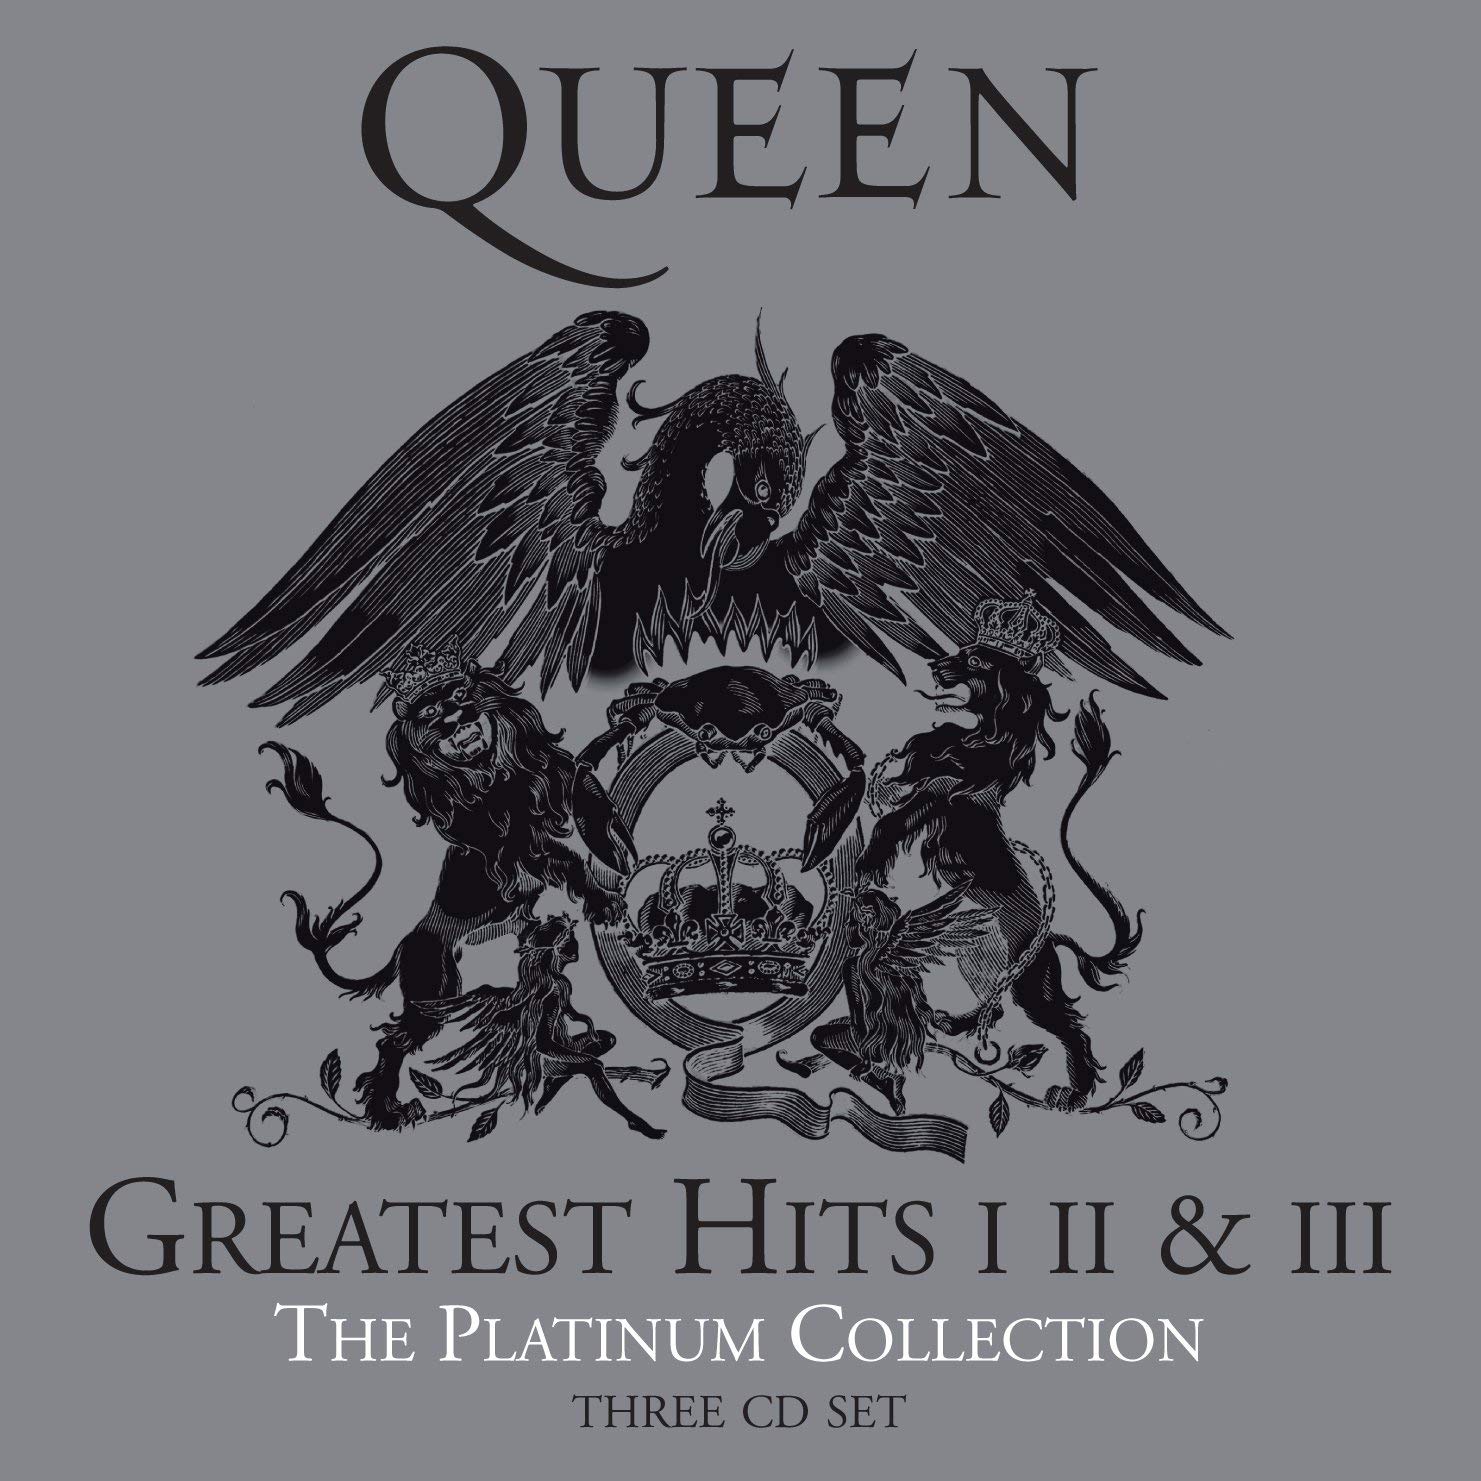 Foto da capa do álbum The Platinum Collection da banda Queen